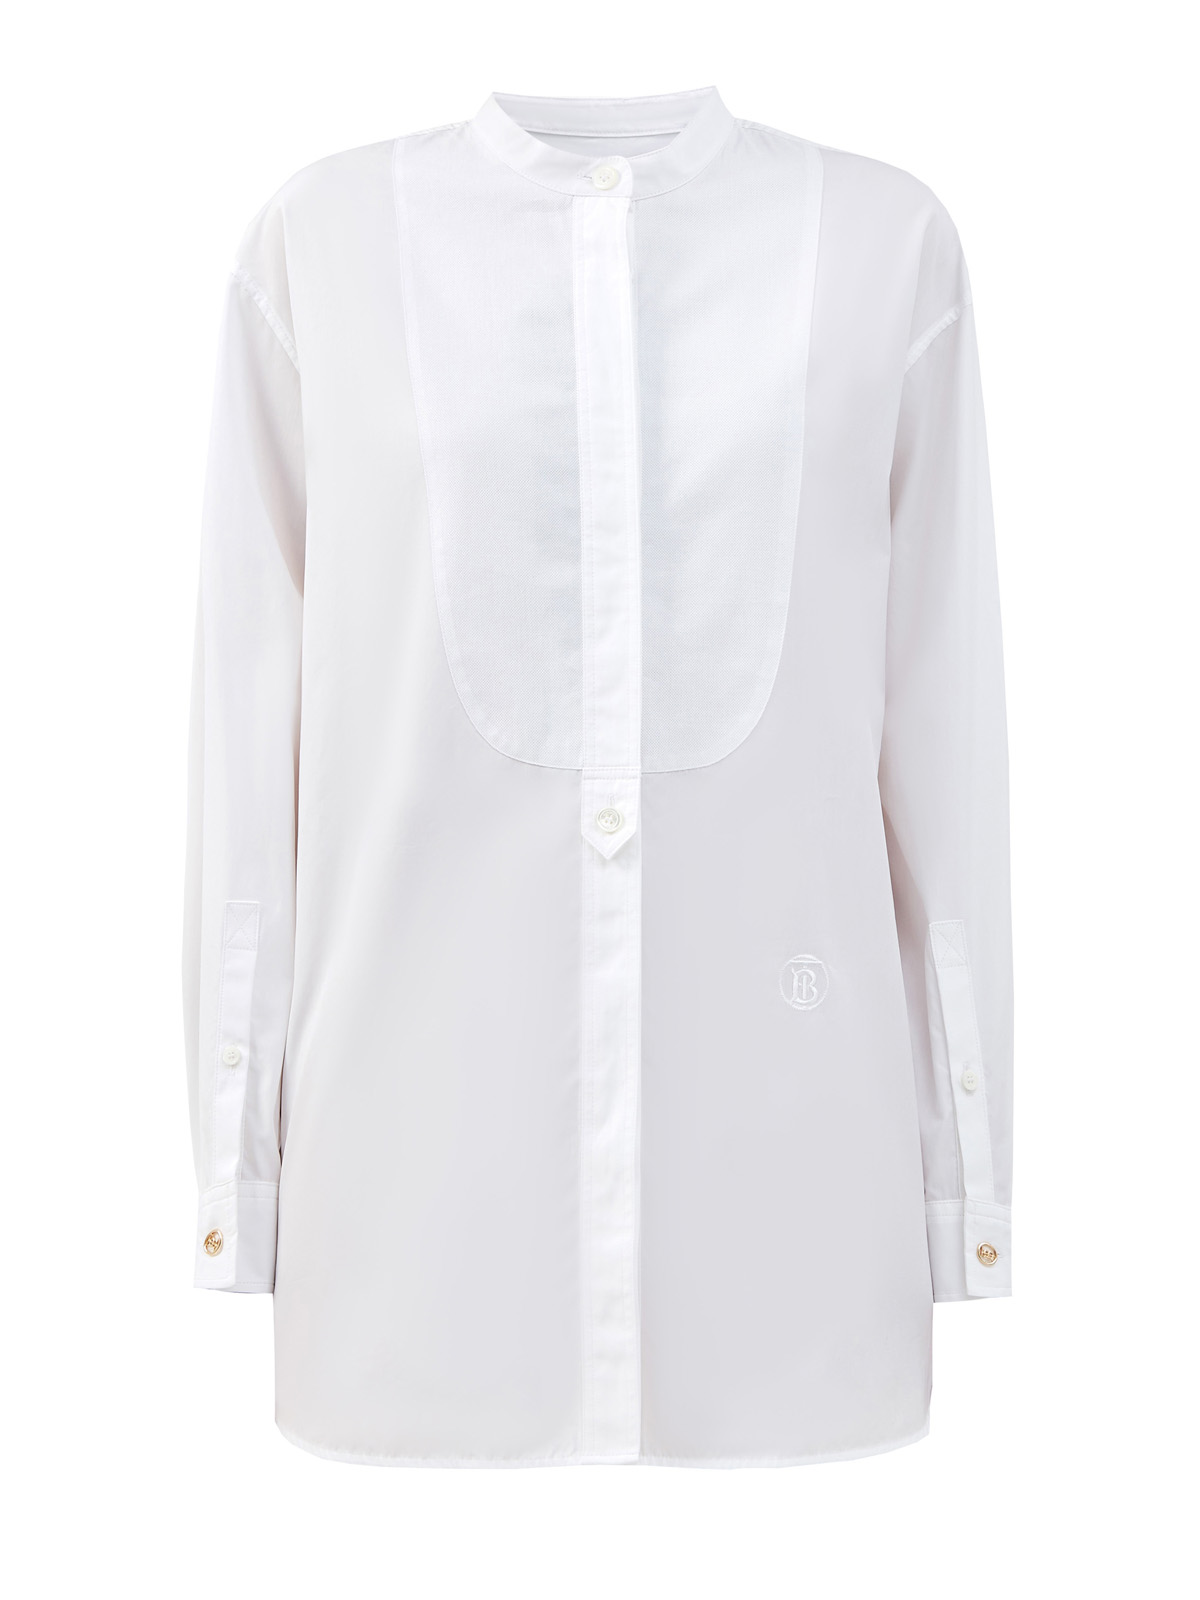 Объемная рубашка из капсульной коллекции Future Heritage с монограммой BURBERRY, цвет белый, размер S;L;XL;2XL;M - фото 1